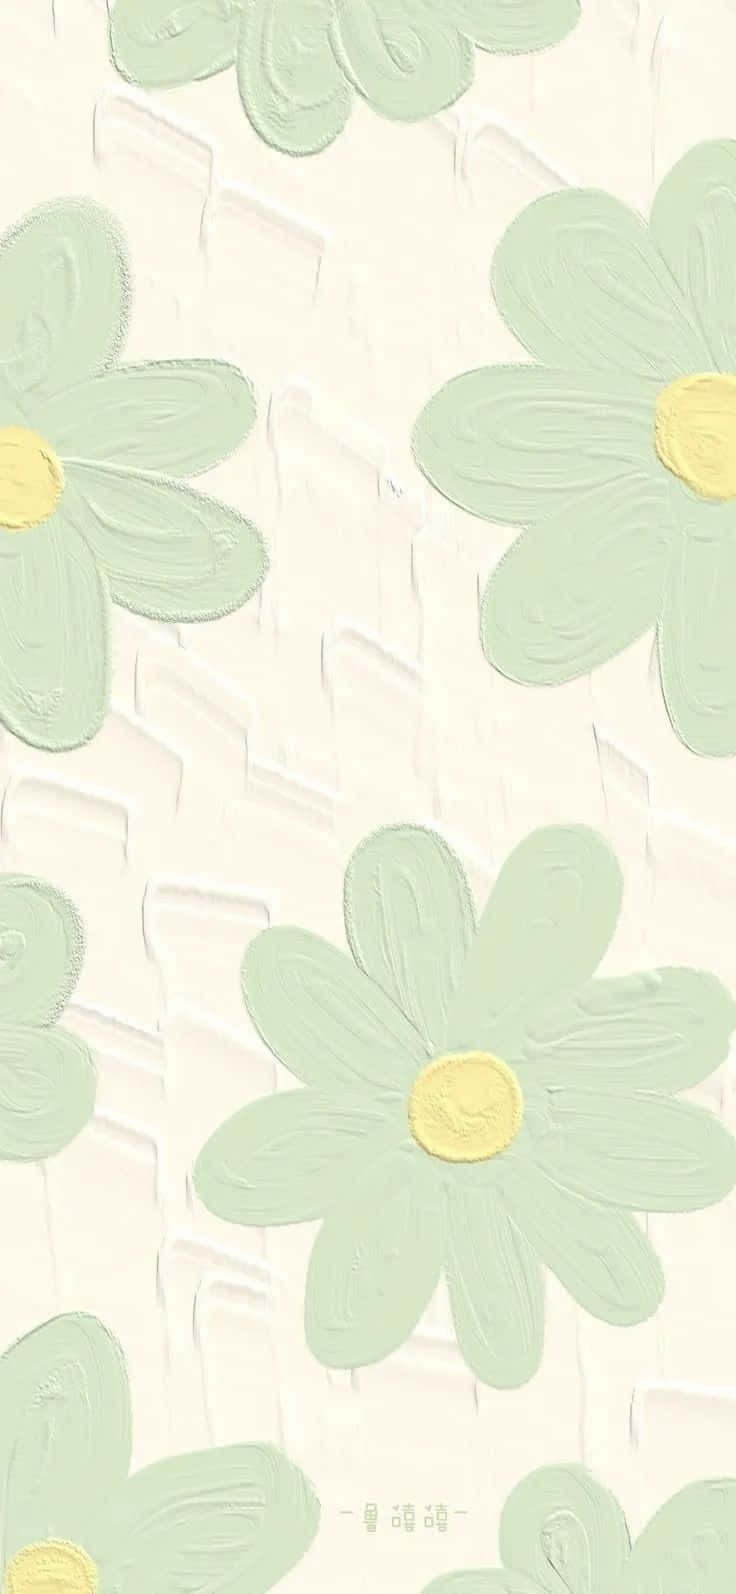 Preppy Pastel Flower Pattern Wallpaper